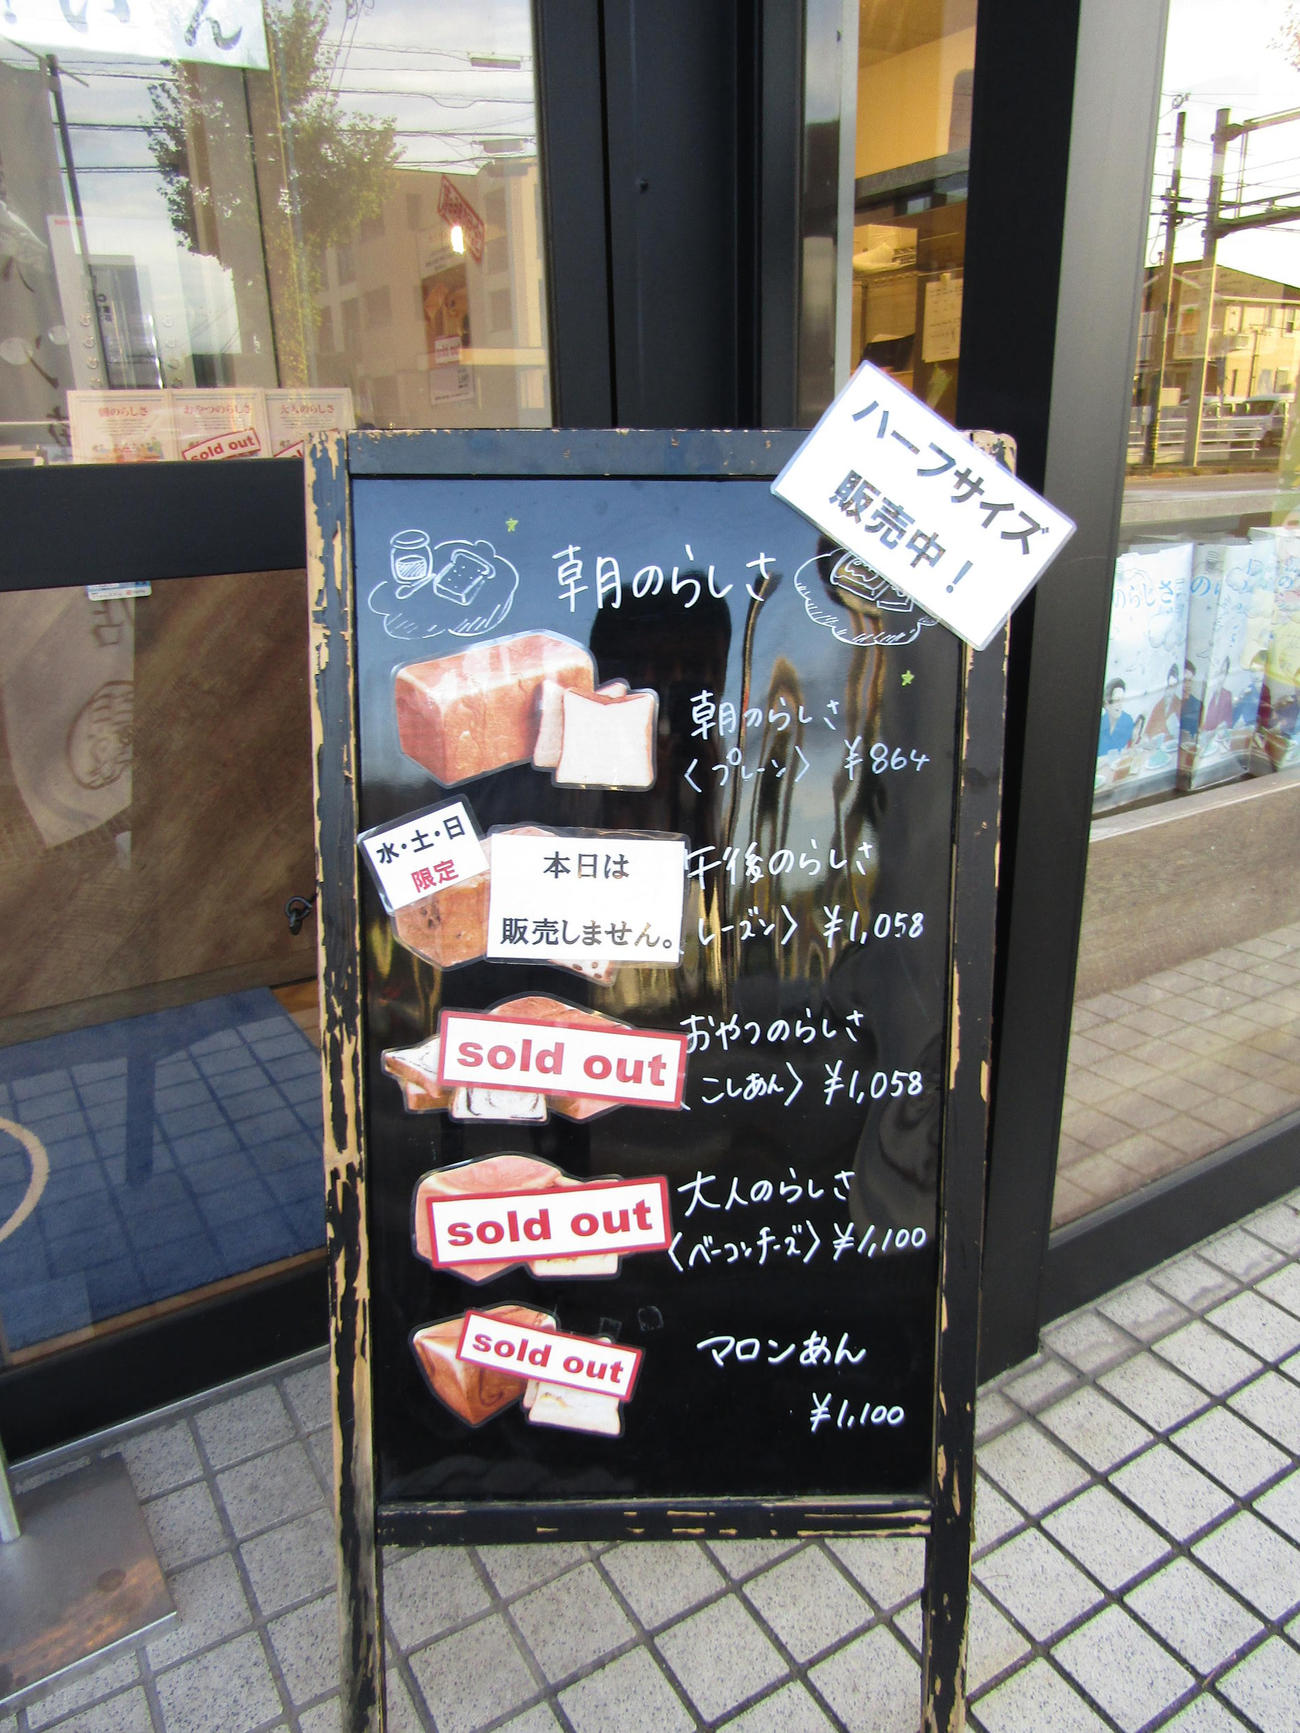 浅野拓磨が経営する食パン店「朝のらしさ」は午後になると売り切れが続出